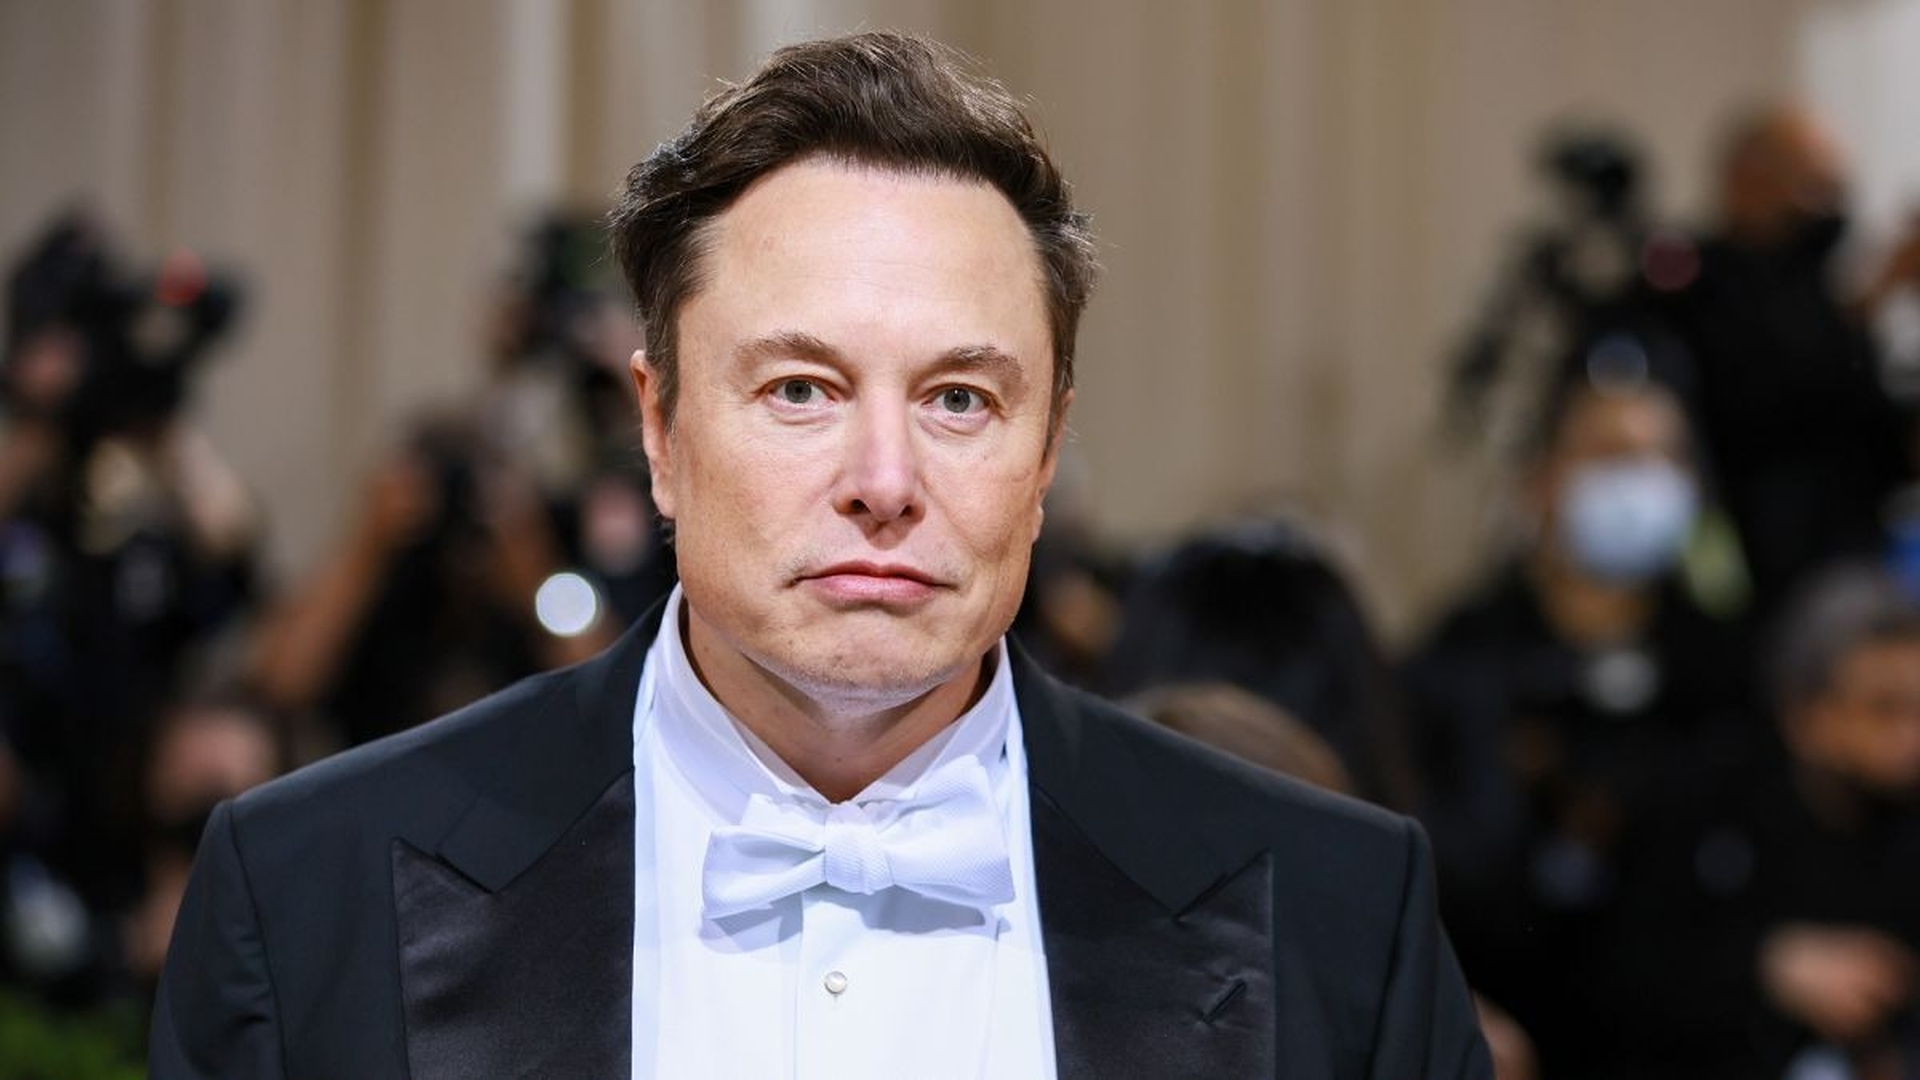 In diesem Artikel werden wir darüber berichten, dass der Twitter-Aktionär Elon Musk mit der Begründung verklagt, dass der CEO von Tesla die Aktien von Twitter zum persönlichen Vorteil manipuliert habe.